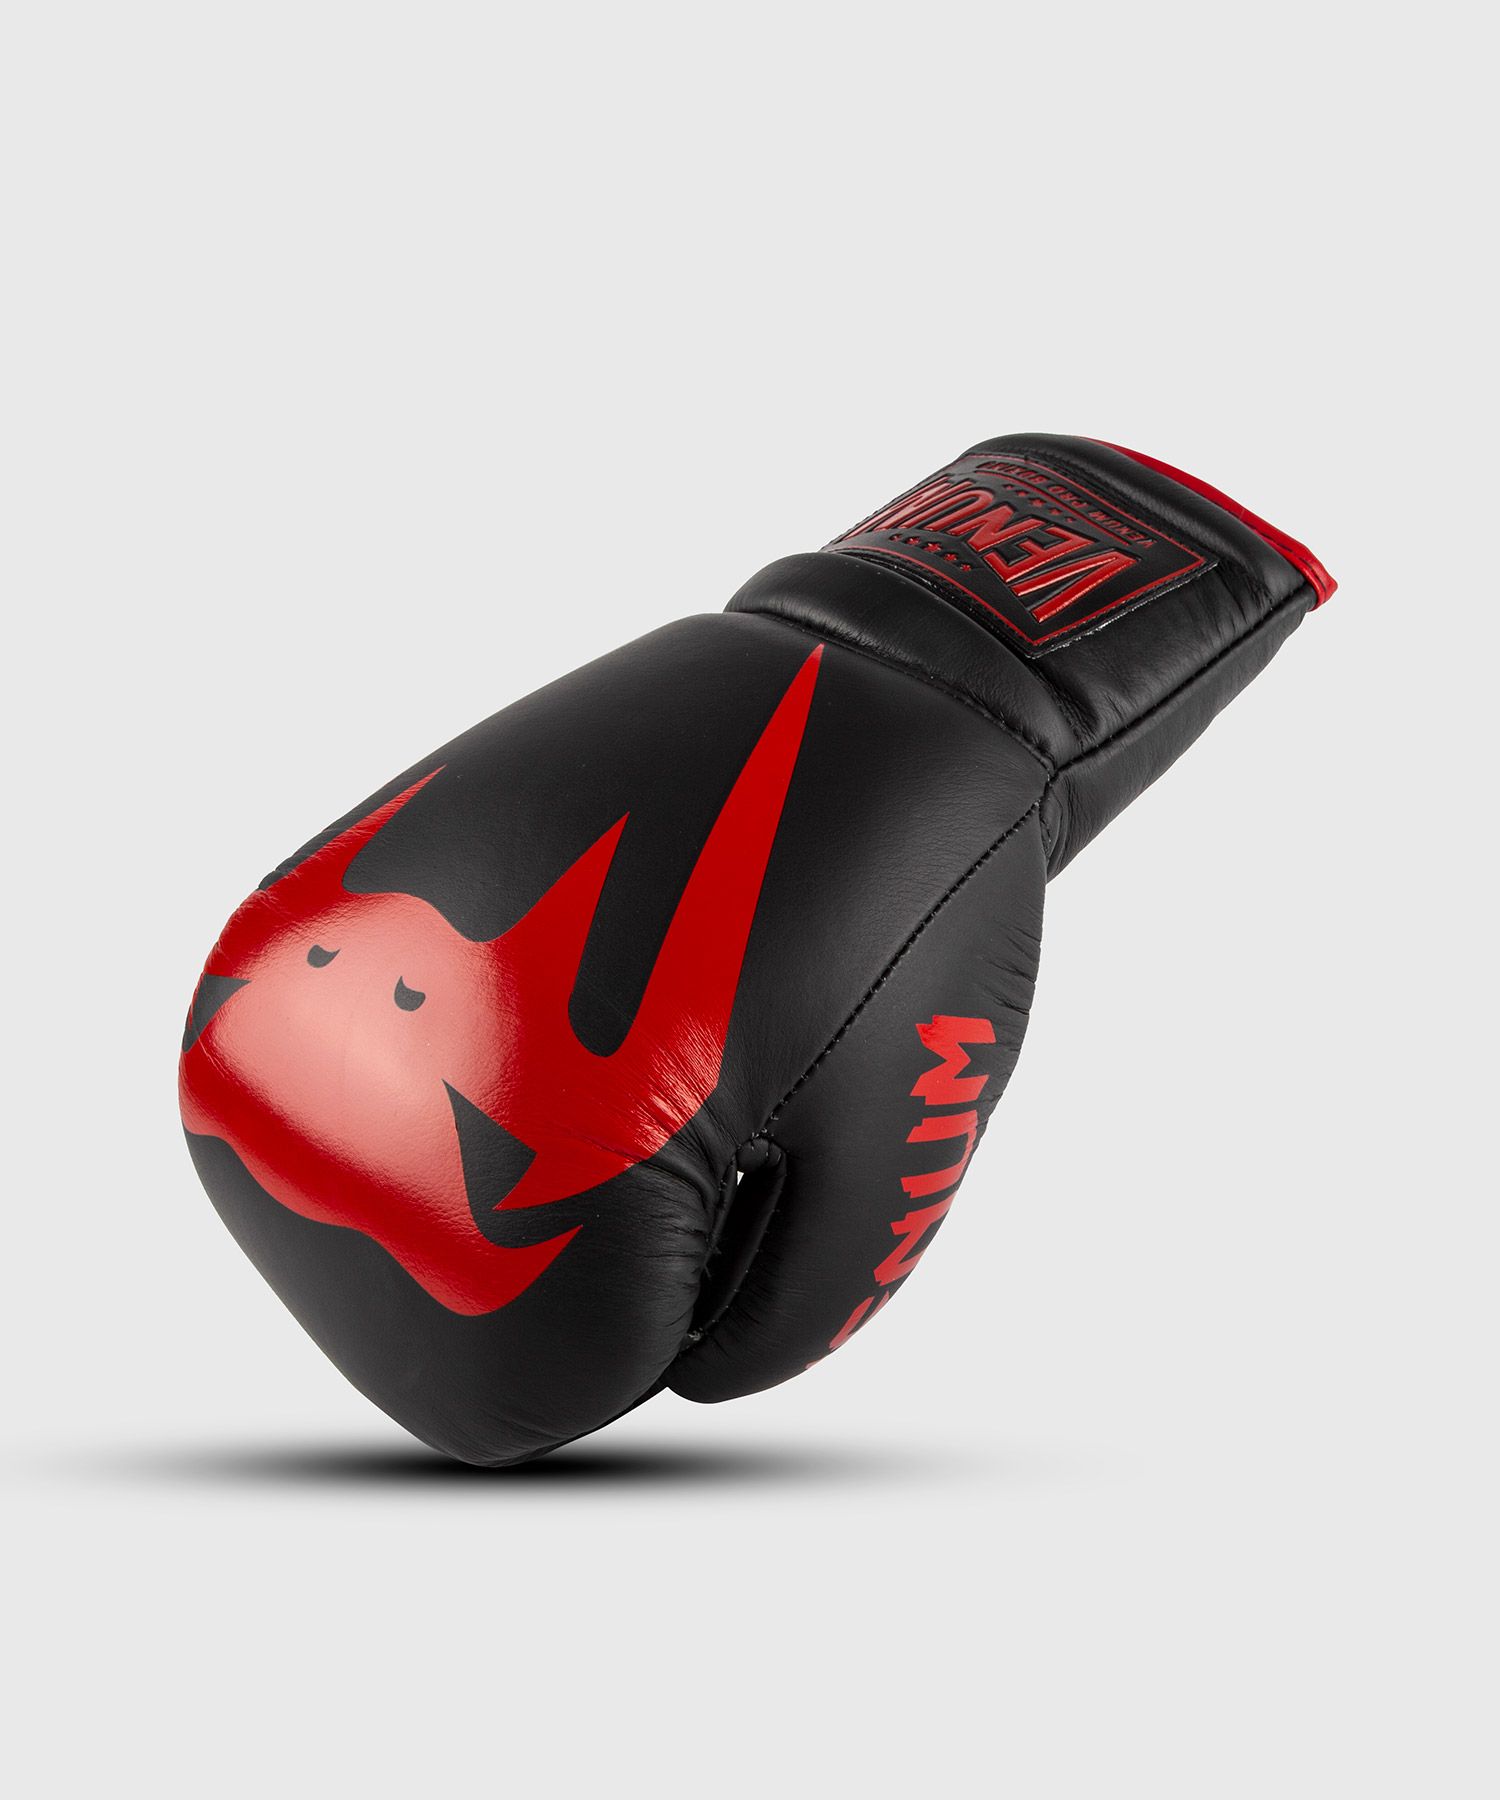 Gants de Boxe Pro Venum Giant 2.0 - Avec Lacets - Noir/Rouge